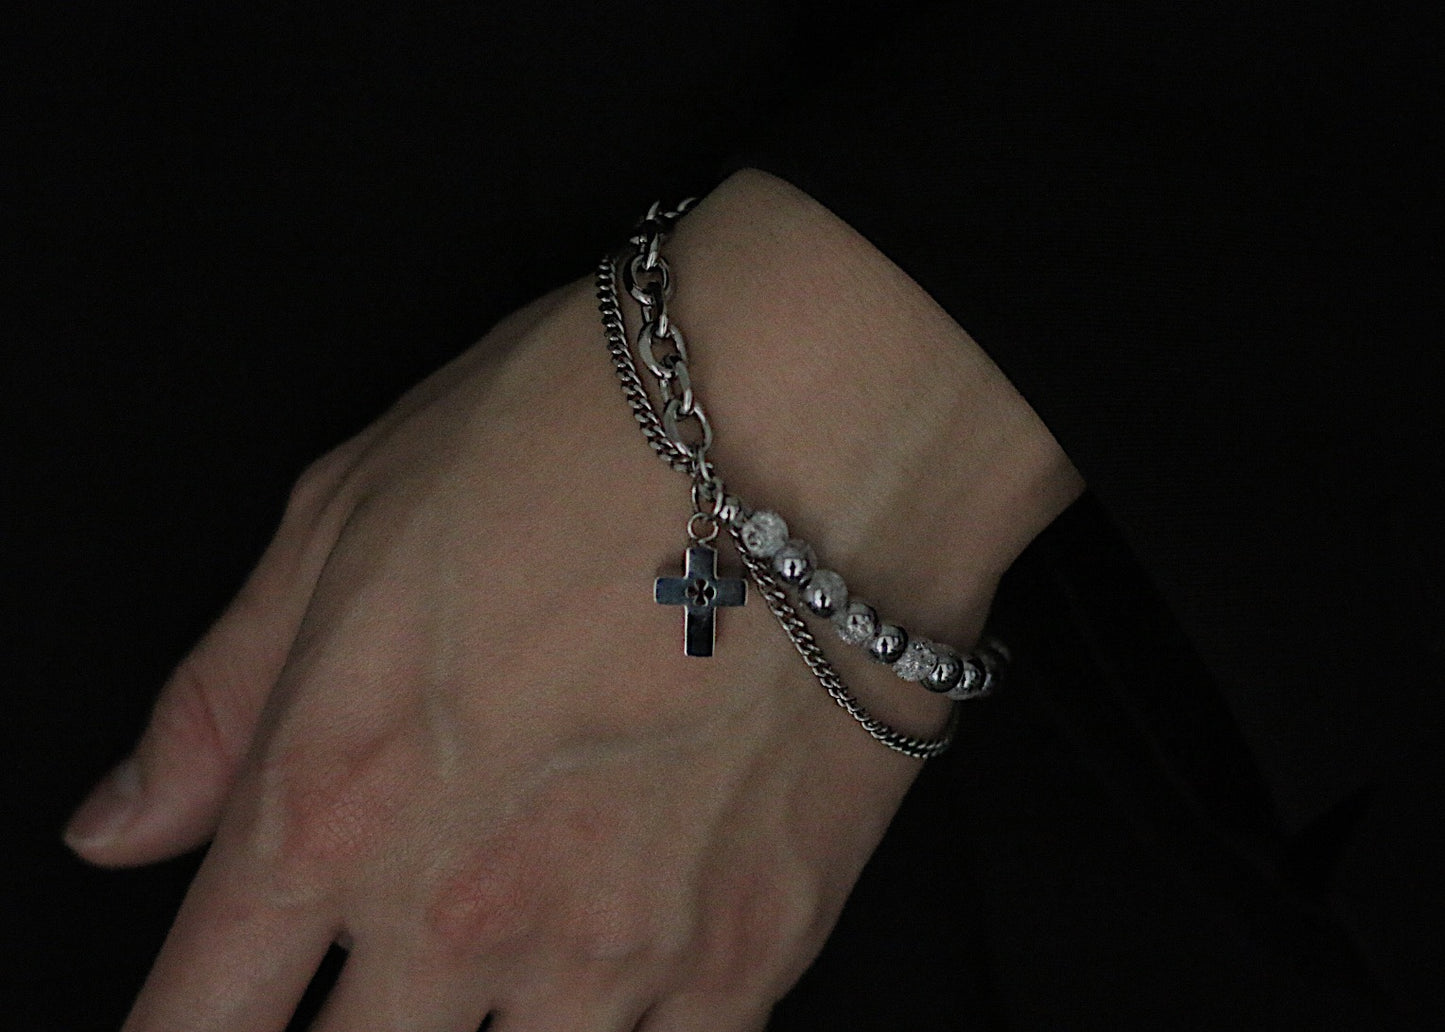 Bracelet Monora Dark Gothic *Sin* en Titane